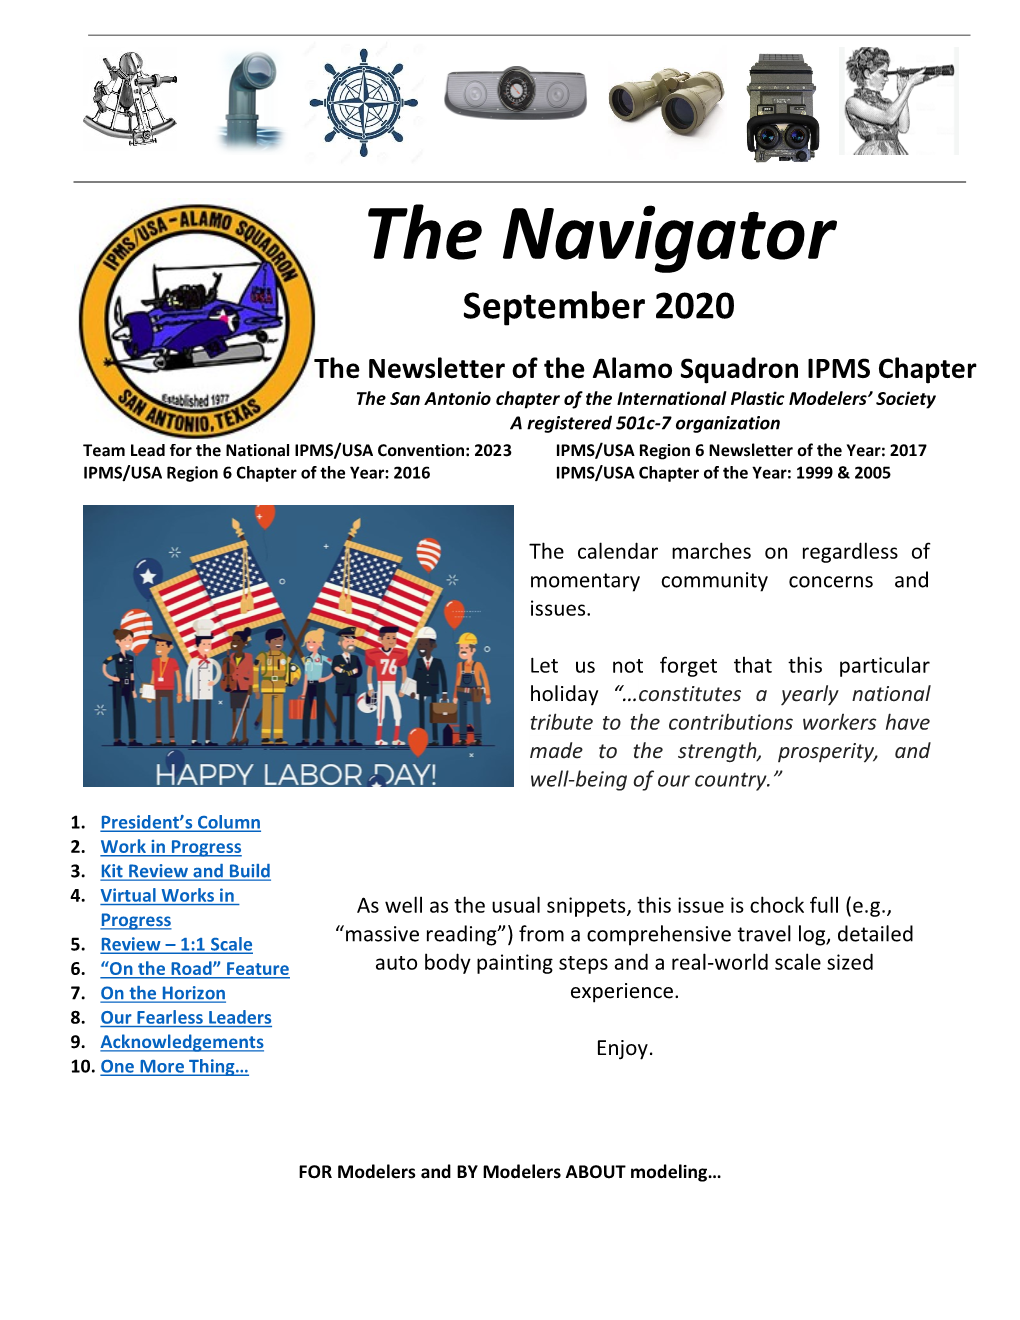 The Navigator September 2020